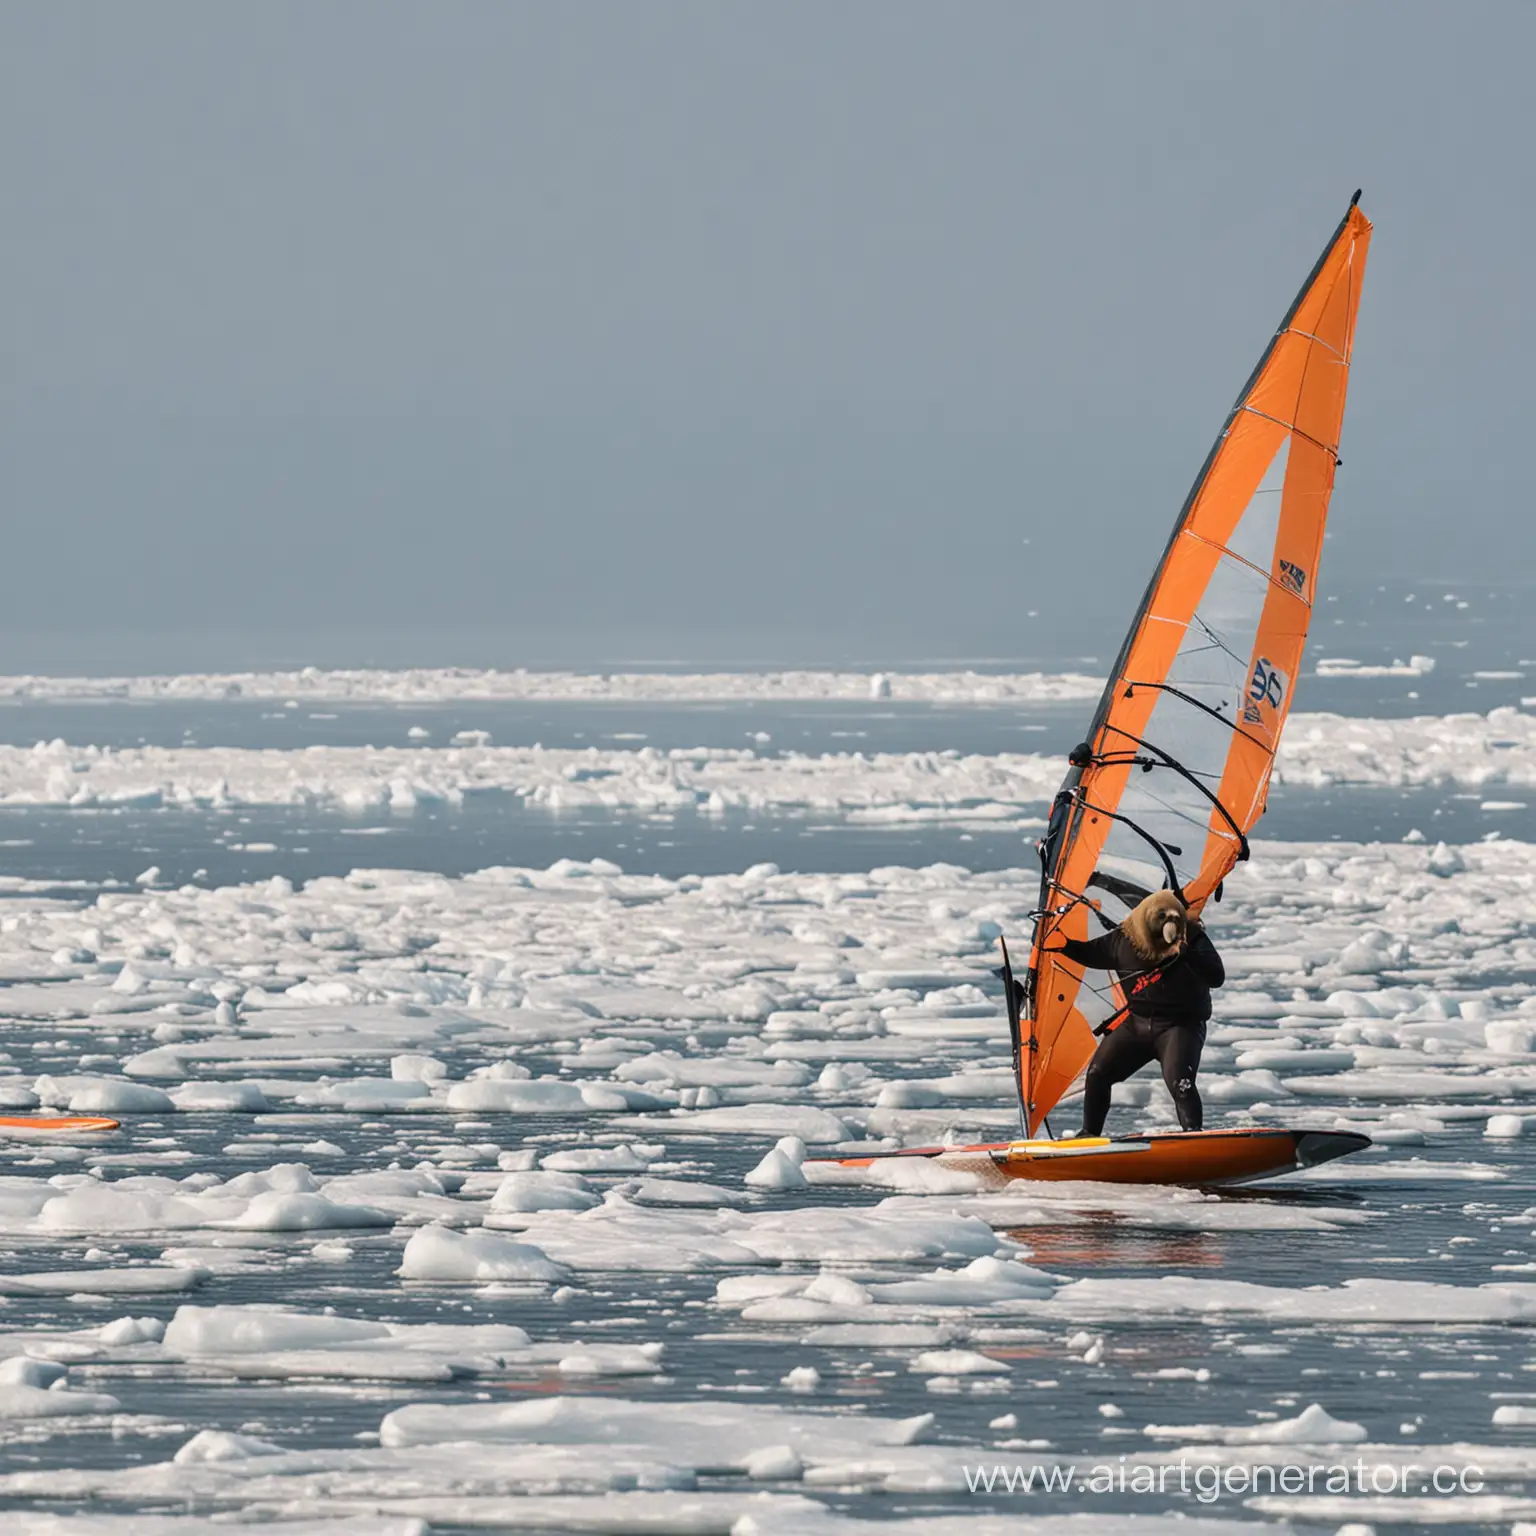 русский морж катающийся на виндсерфинге по морю между льдами
